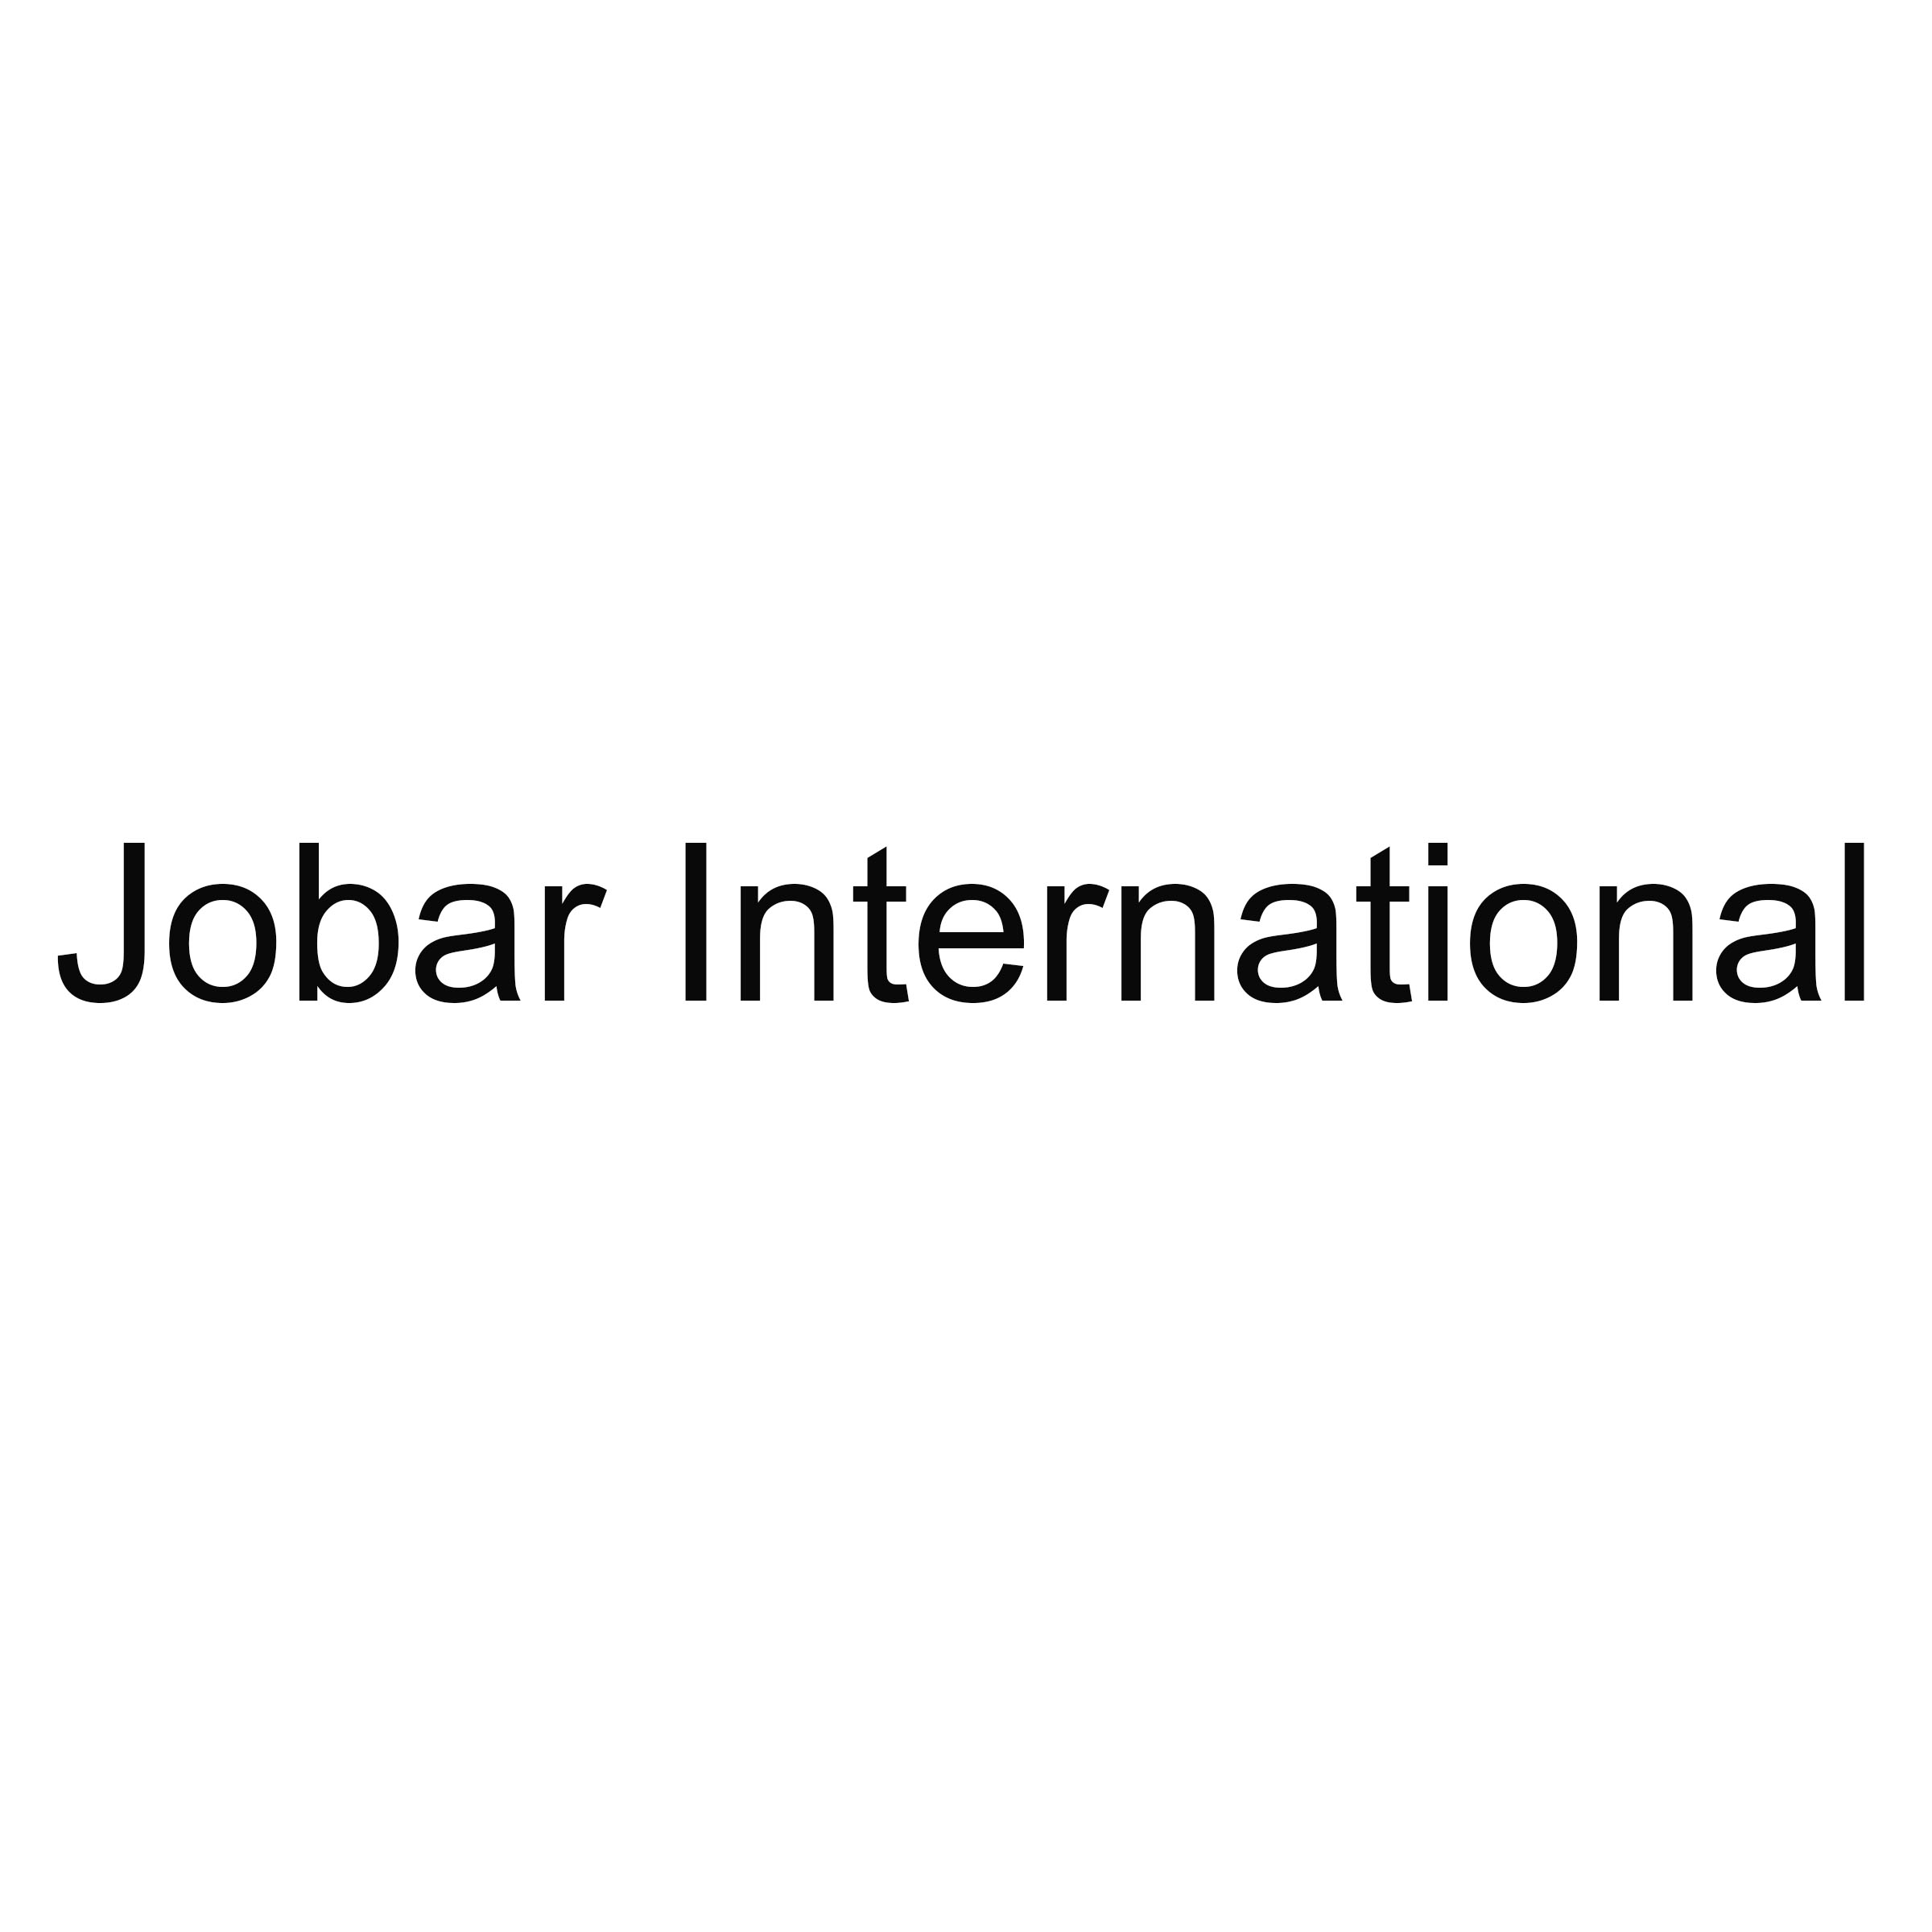 Jobar International Coupons